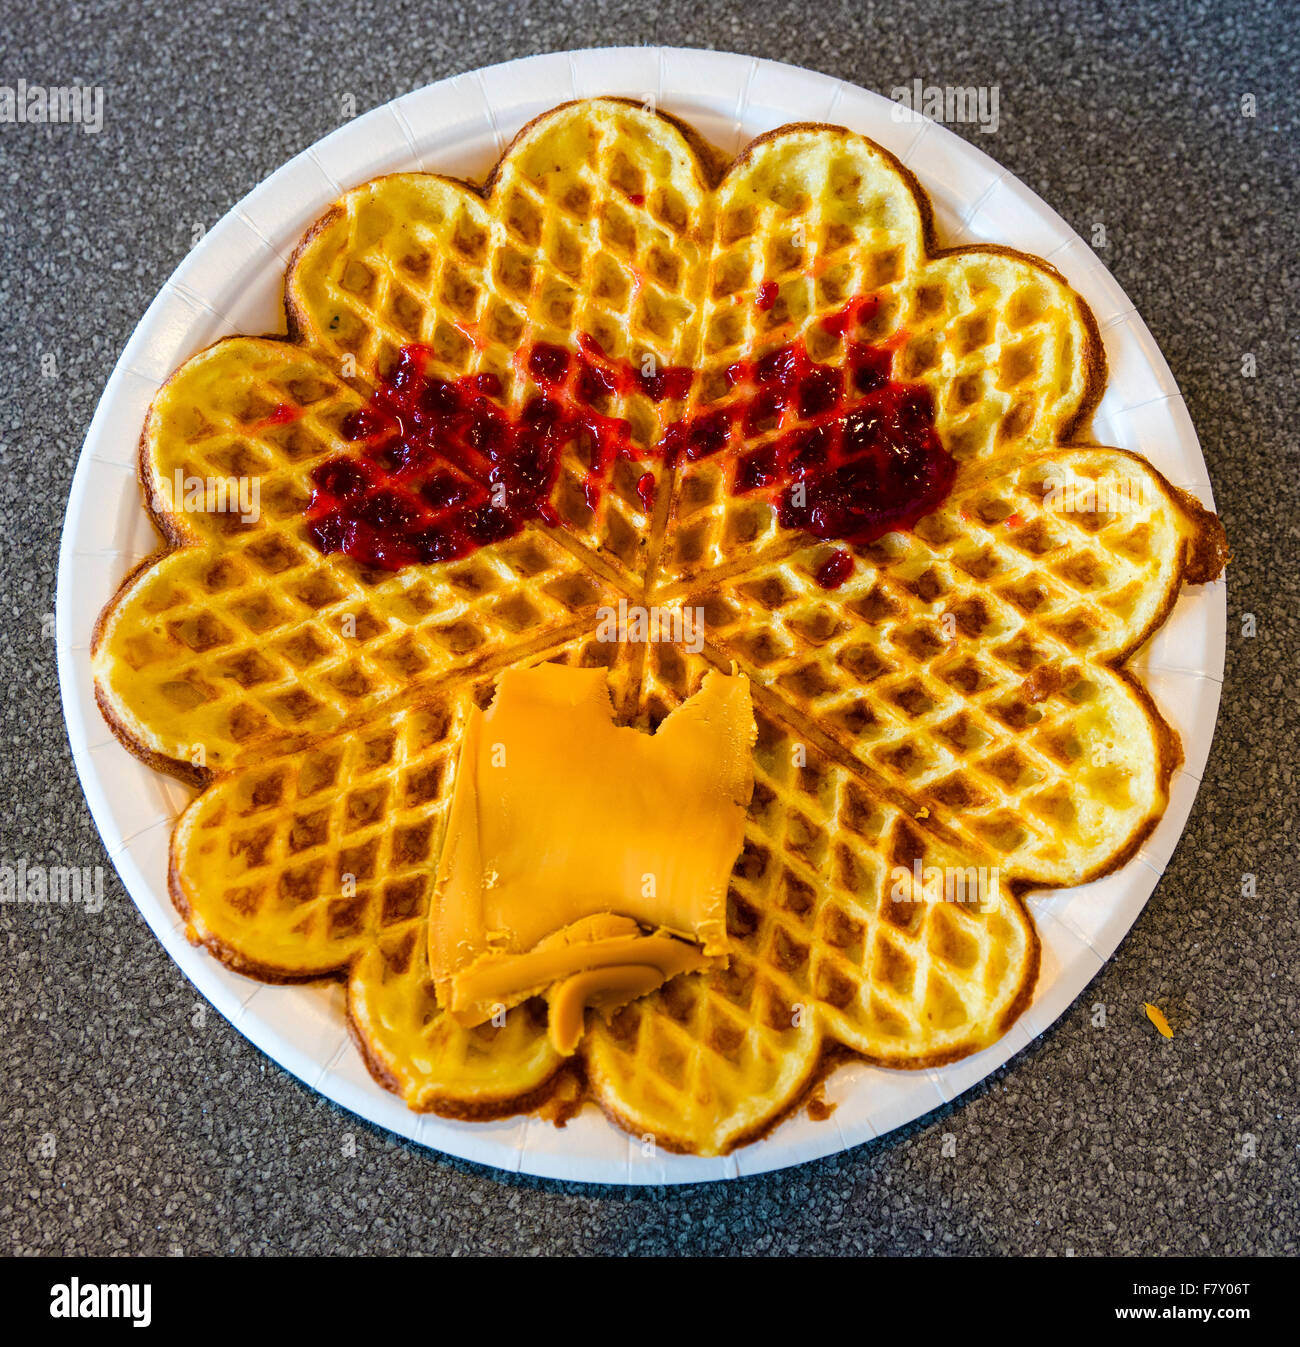 https://c8.alamy.com/compes/f7y06t/waffle-noruego-con-mermelada-y-queso-y-segmentos-en-forma-de-corazon-en-una-placa-blanca-f7y06t.jpg